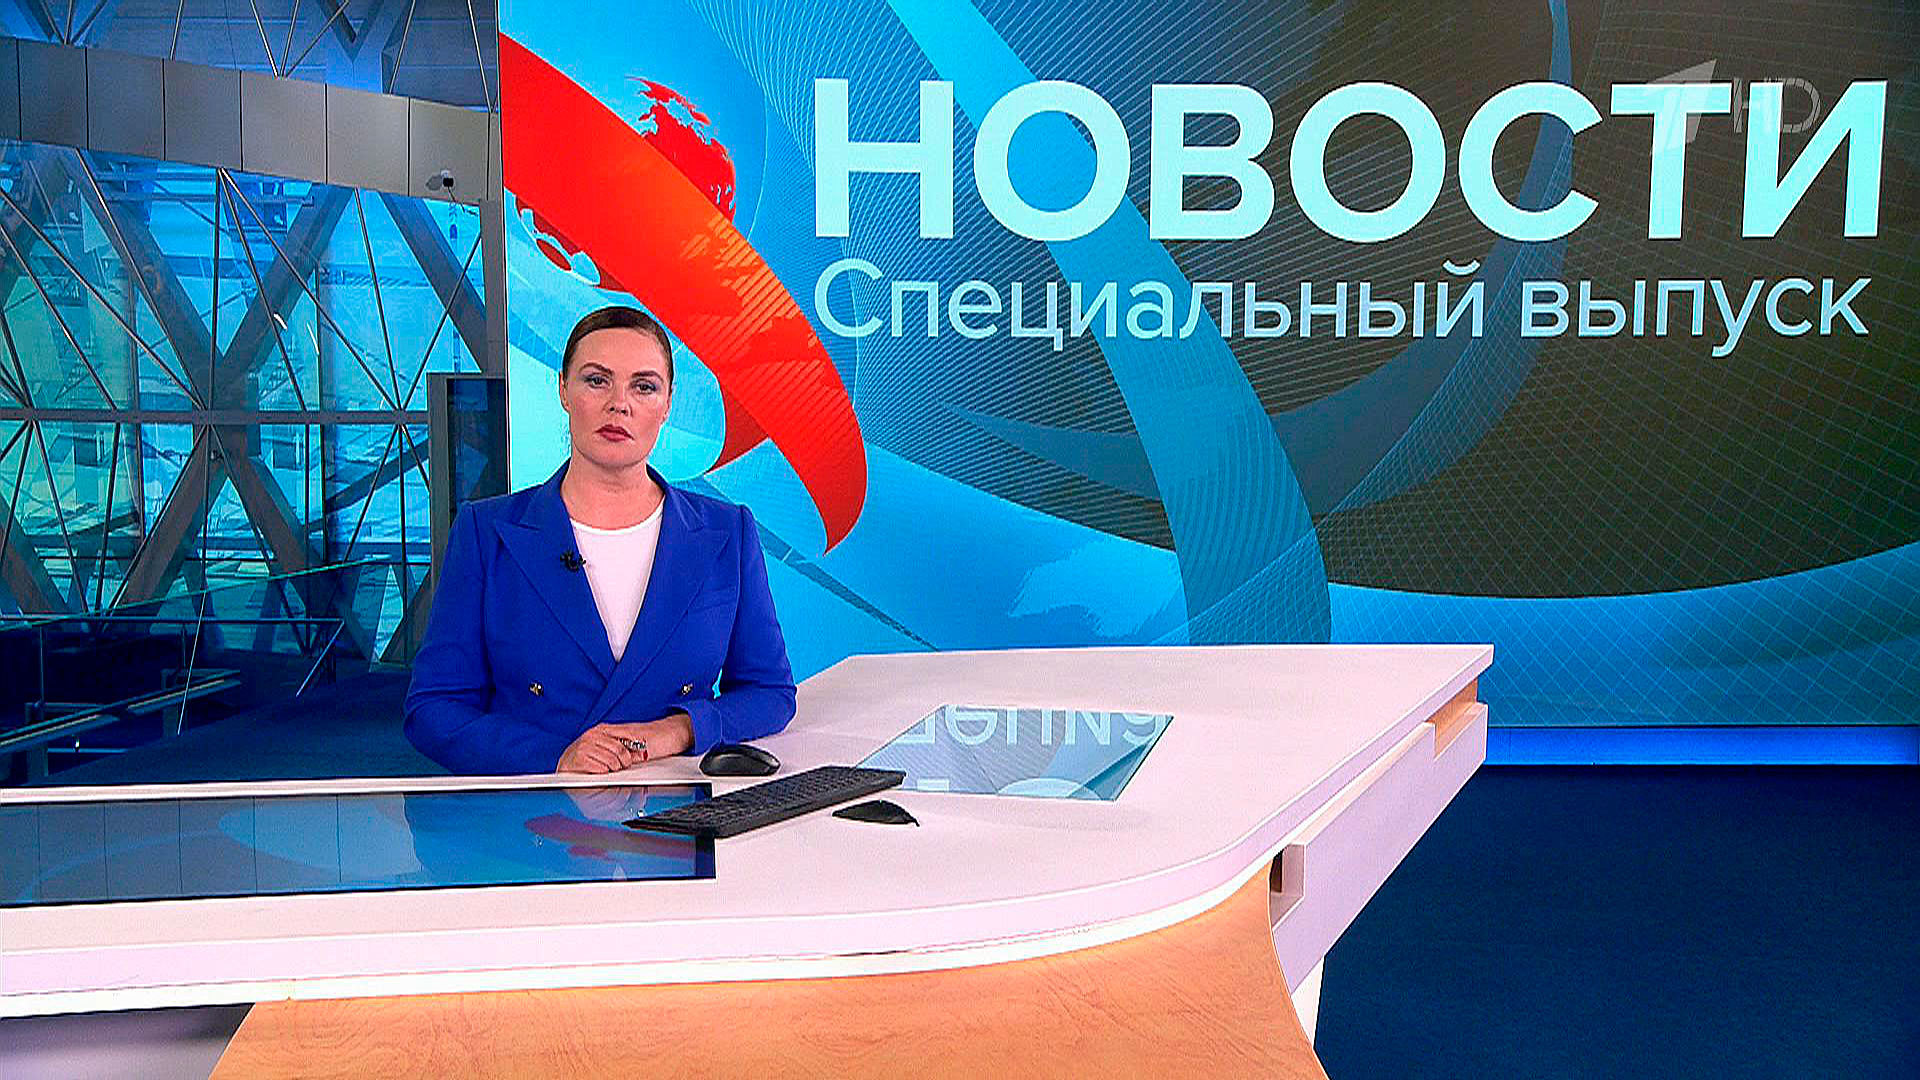 Специальный выпуск новостей 1 сегодня. Novosti na pervom. Выпуск новостей. Специальный выпуск новостей сегодня. Первый канал.